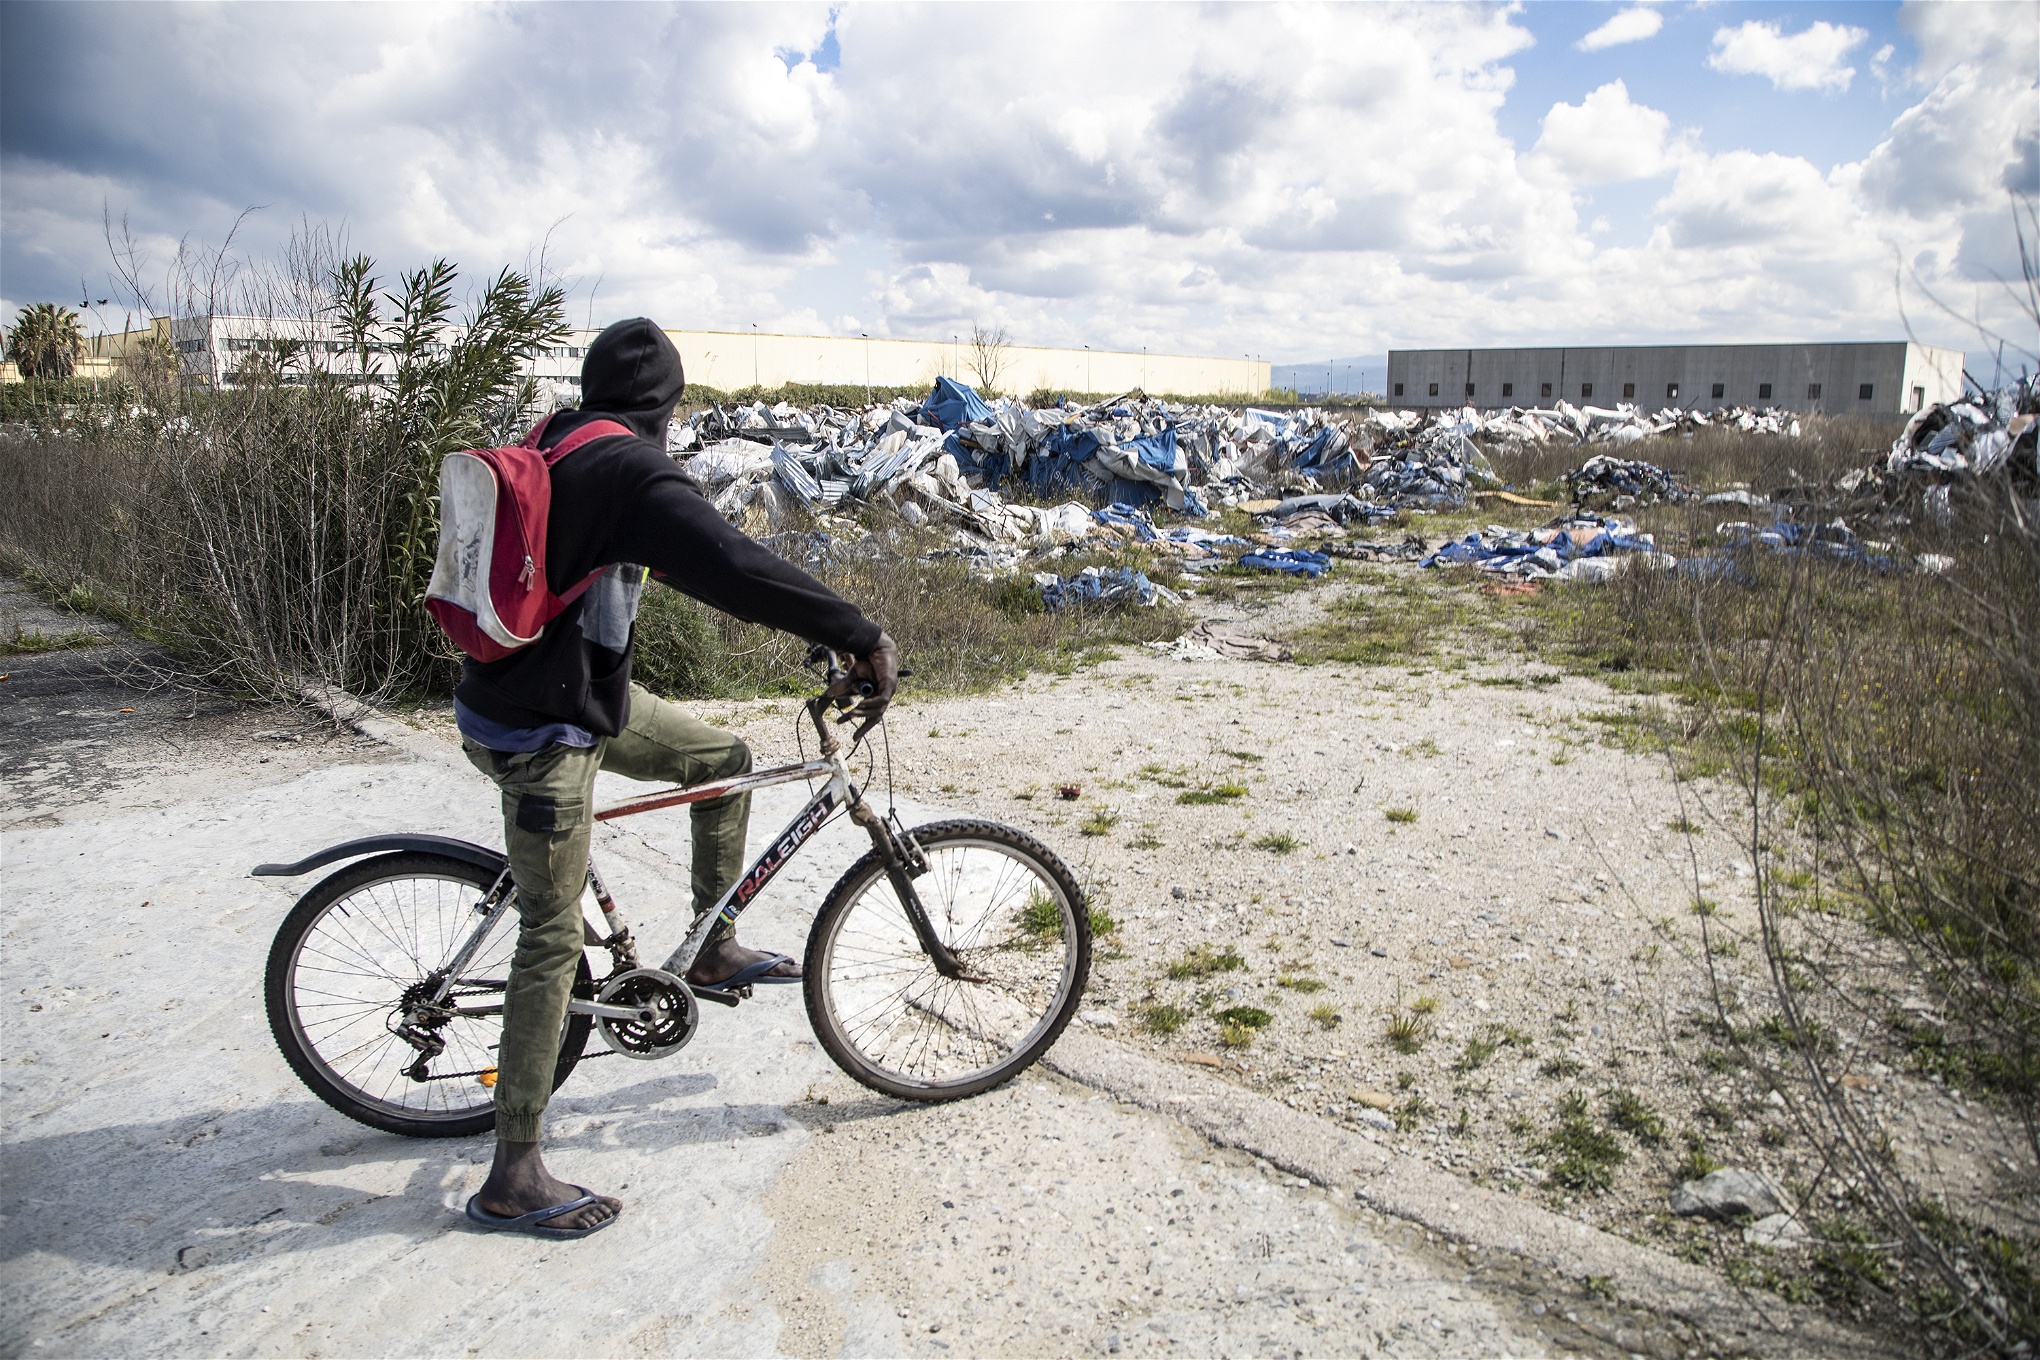 Foto: Valerio NicolosiEn migrantarbetare på cykel blickar ut över den rivna tältstaden.